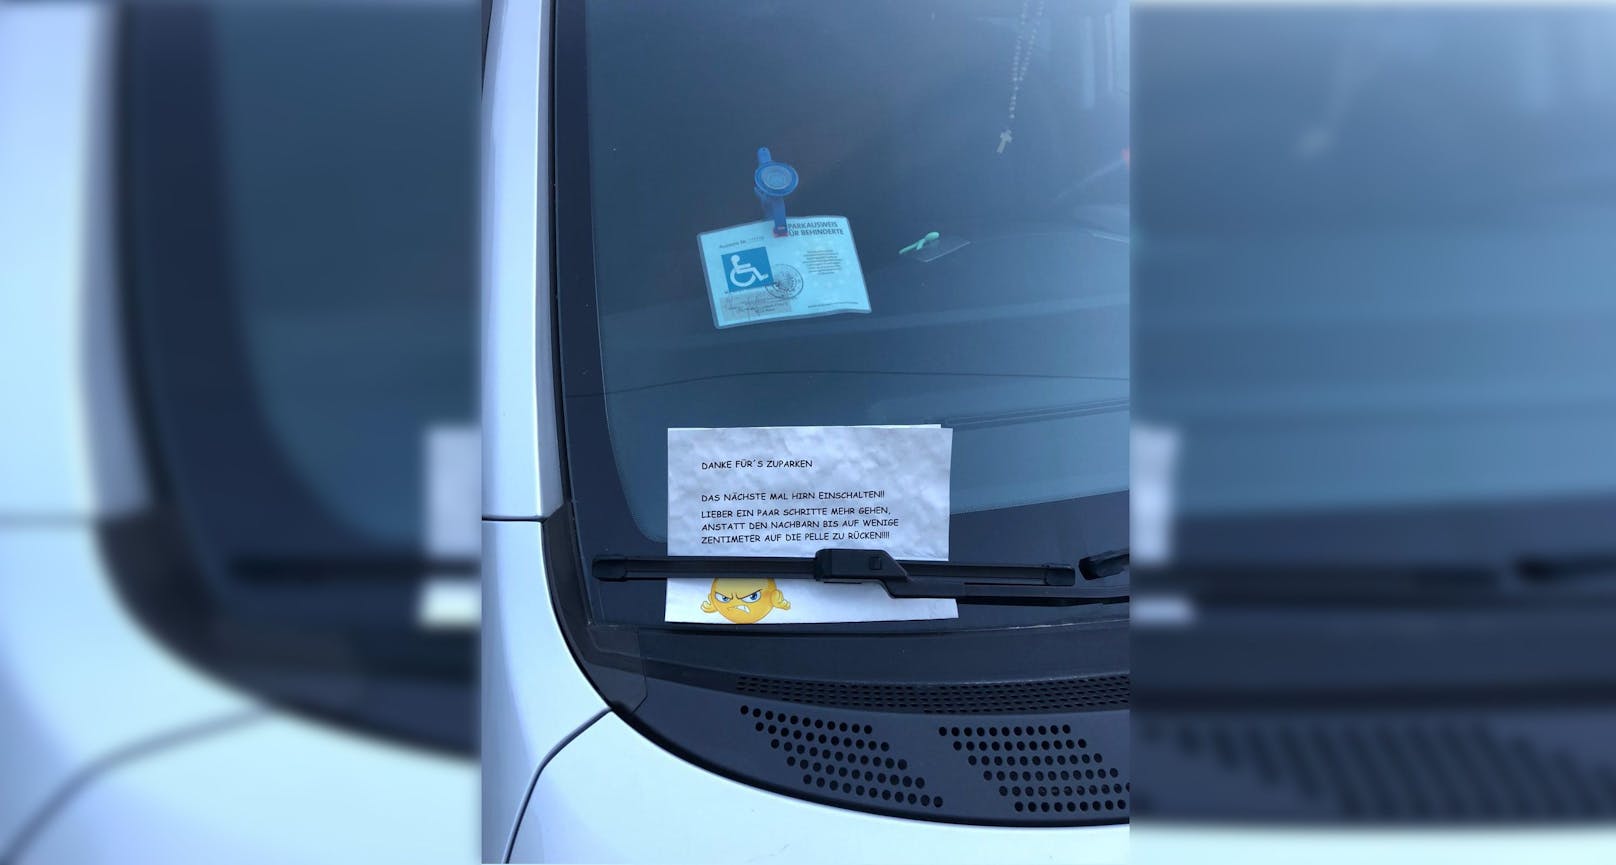 Ein Unbekannter hinterließ eine fragwürdige Nachricht auf dem Fahrzeug.